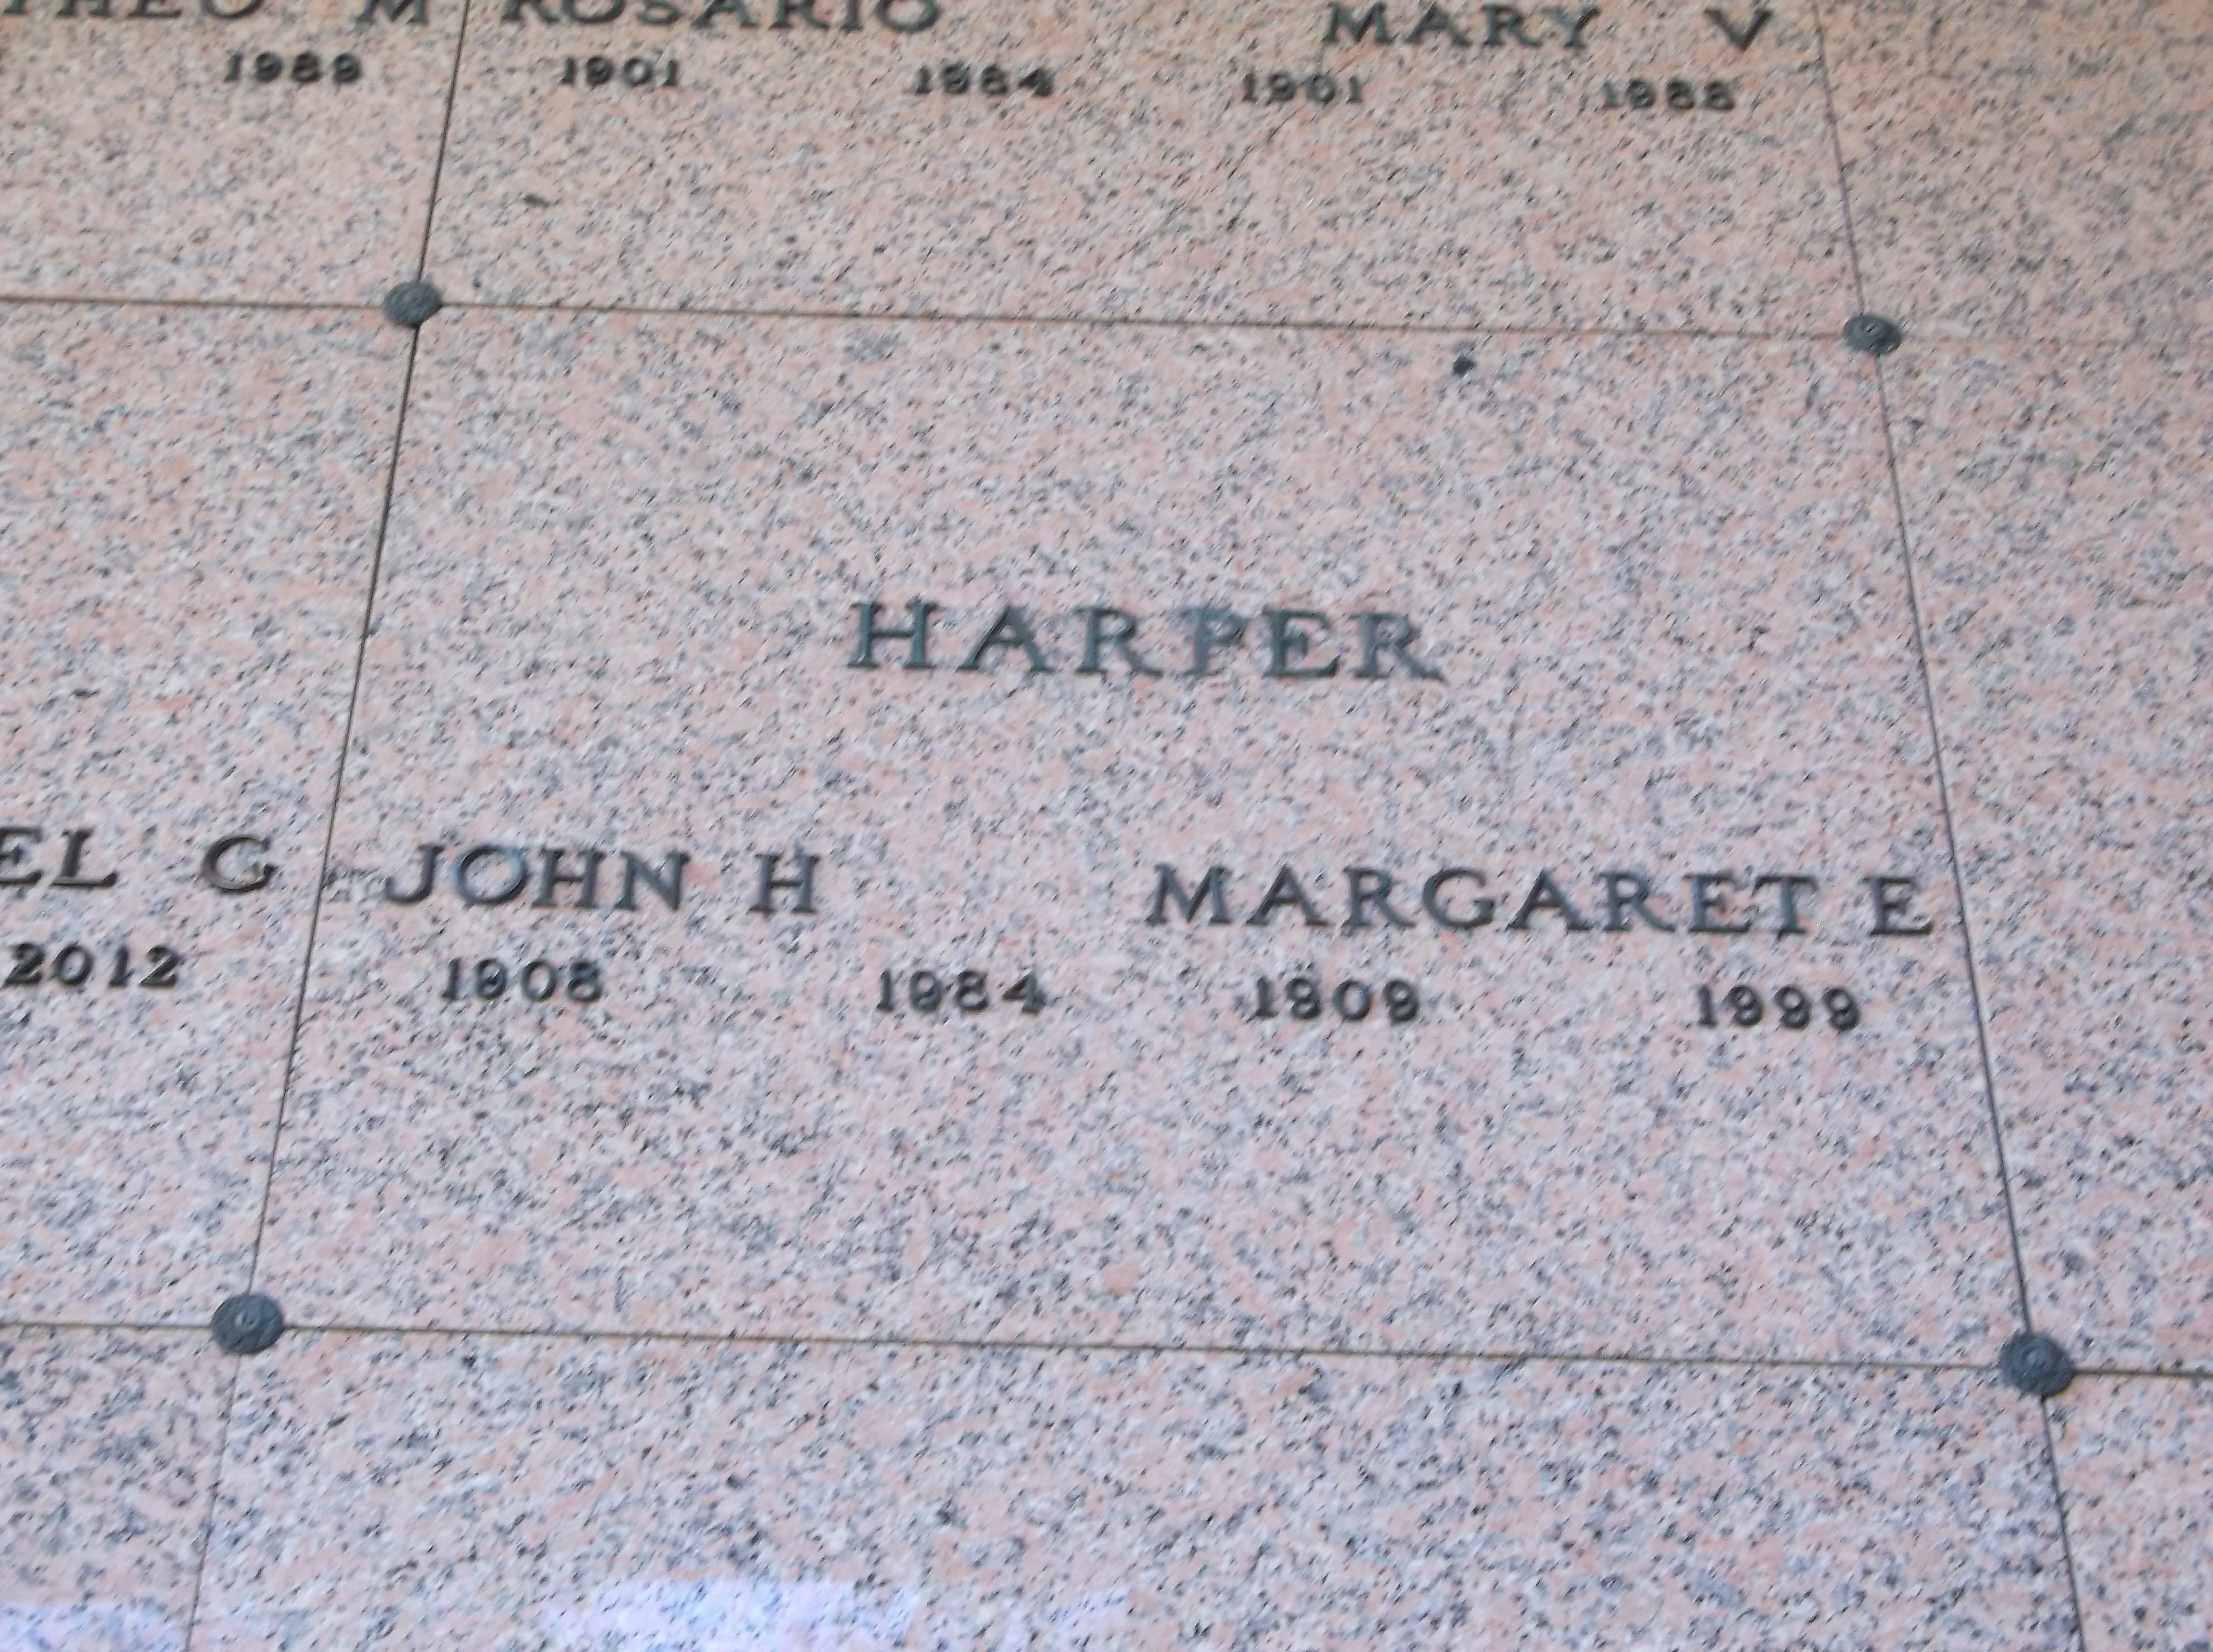 Margaret E Harper